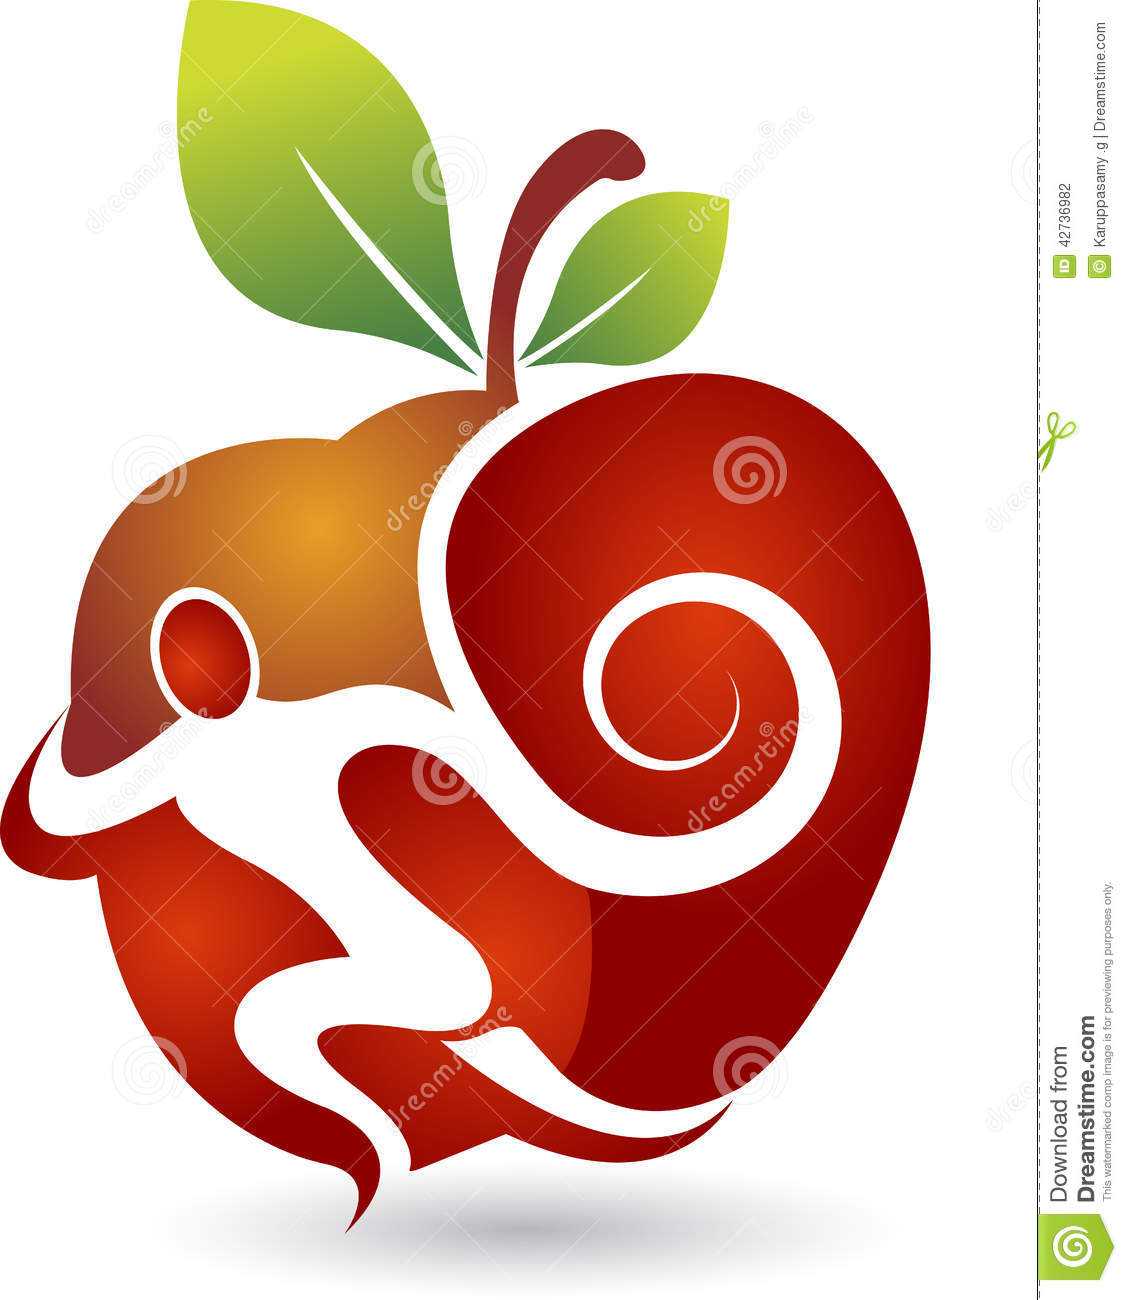 Является ли apple яблоком грехопадения?